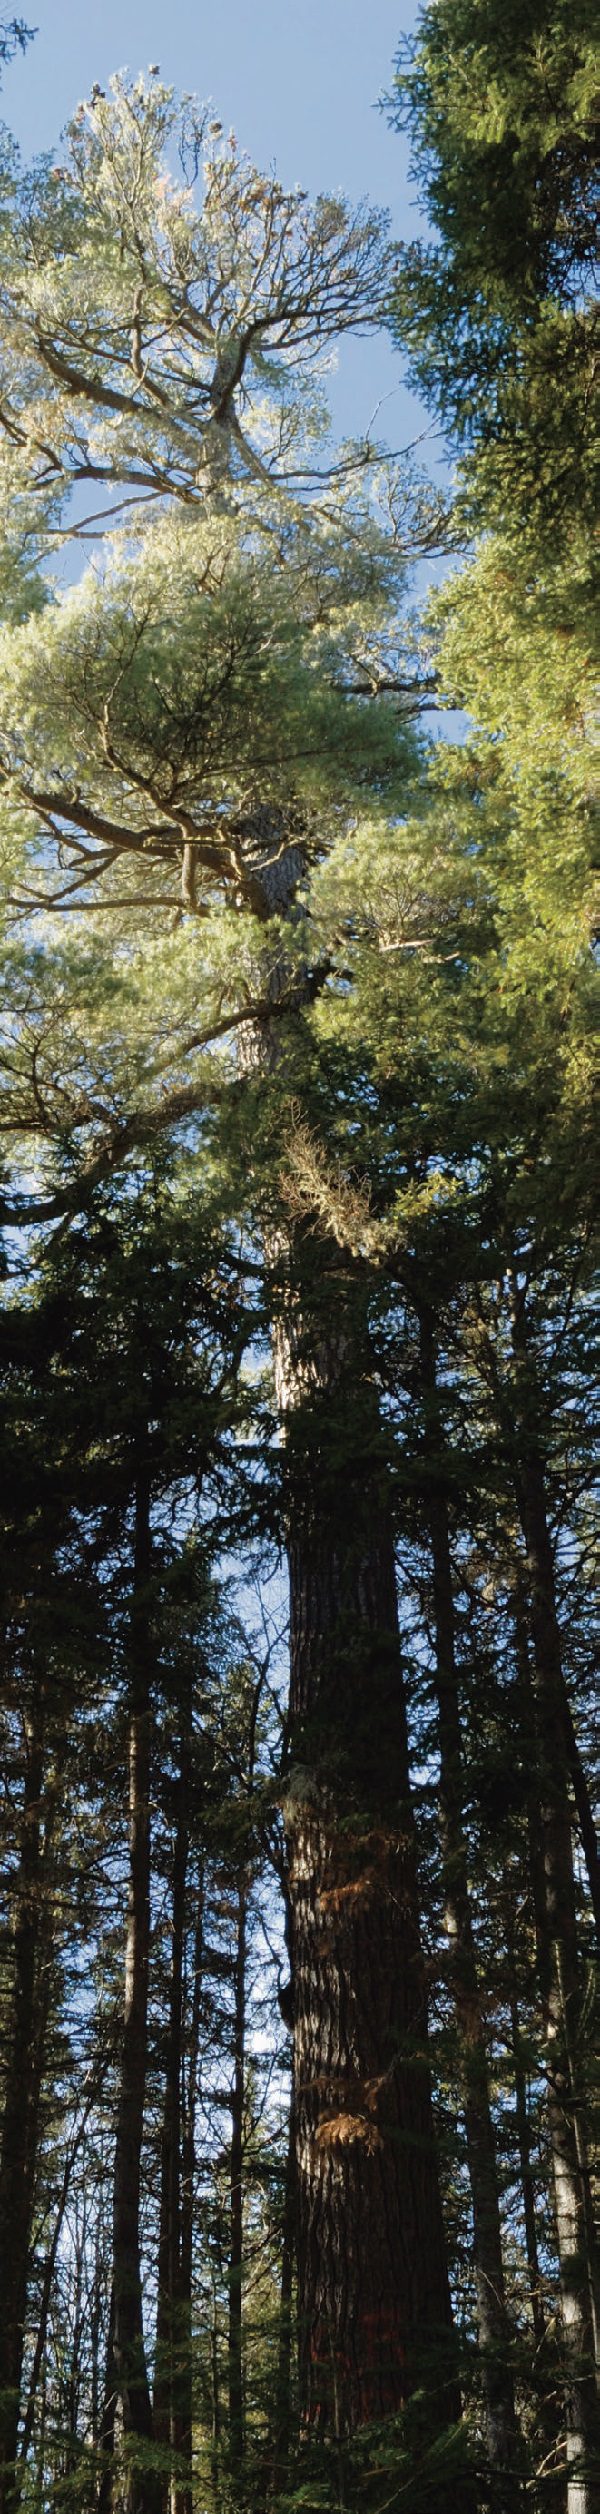 Le pin blanc croît rapidement et atteint parfois des dimensions impressionnantes. La majorité de ces arbres magnifi ques ont été coupés pour l’industrie du bois dans les années 1800.